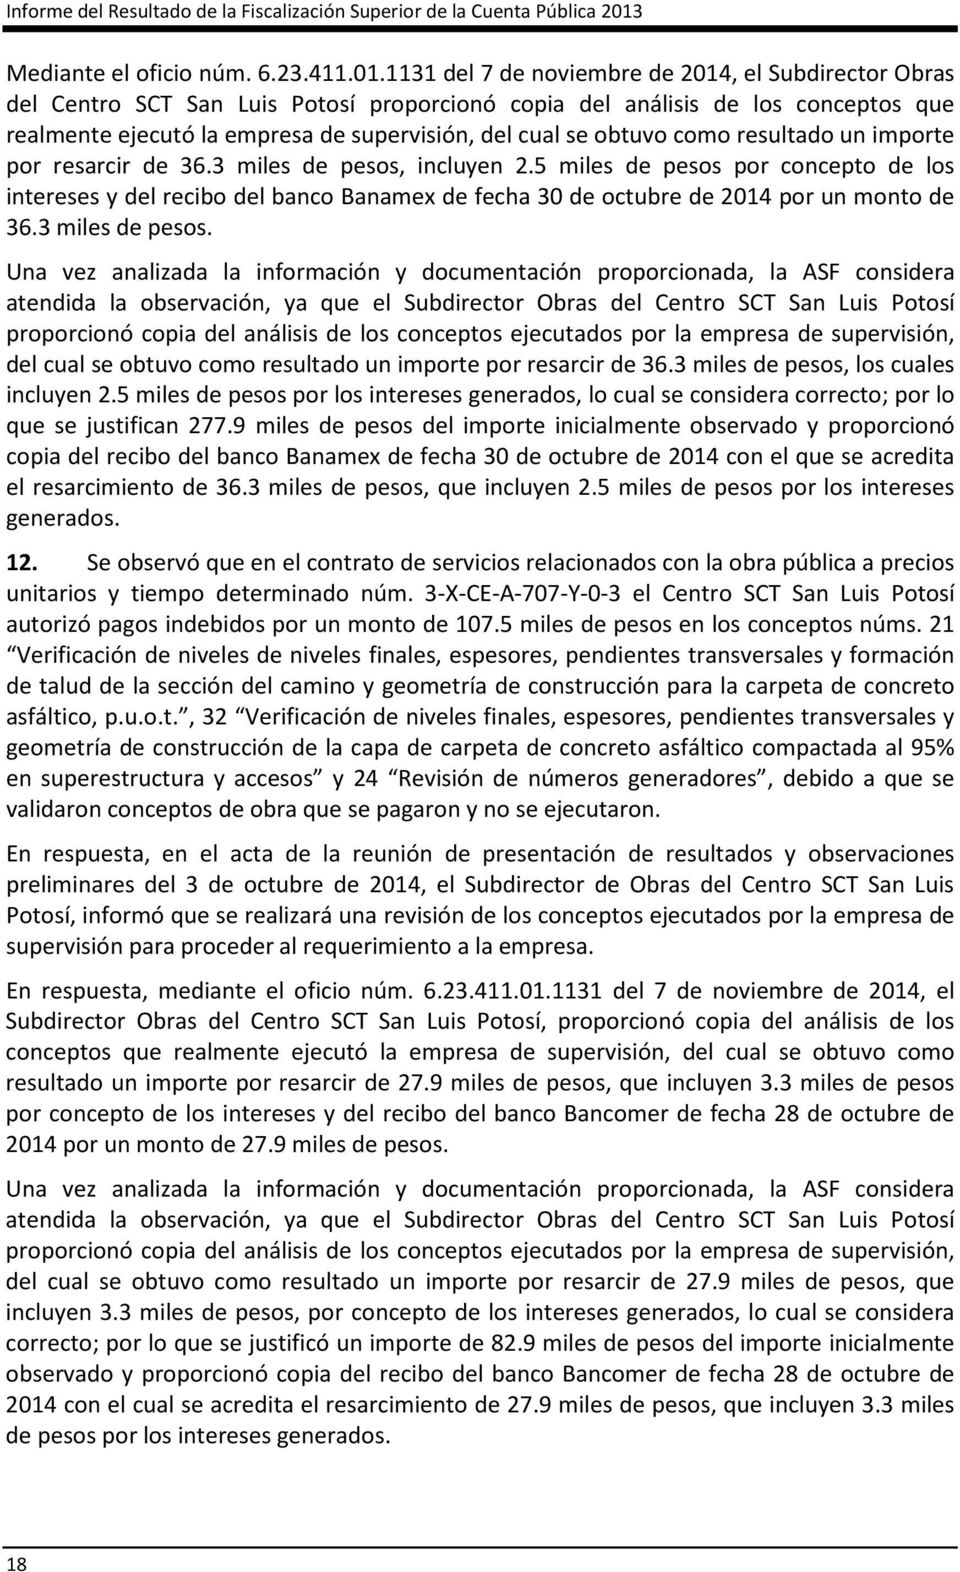 1131 del 7 de noviembre de 2014, el Subdirector Obras del Centro SCT San Luis Potosí proporcionó copia del análisis de los conceptos que realmente ejecutó la empresa de supervisión, del cual se